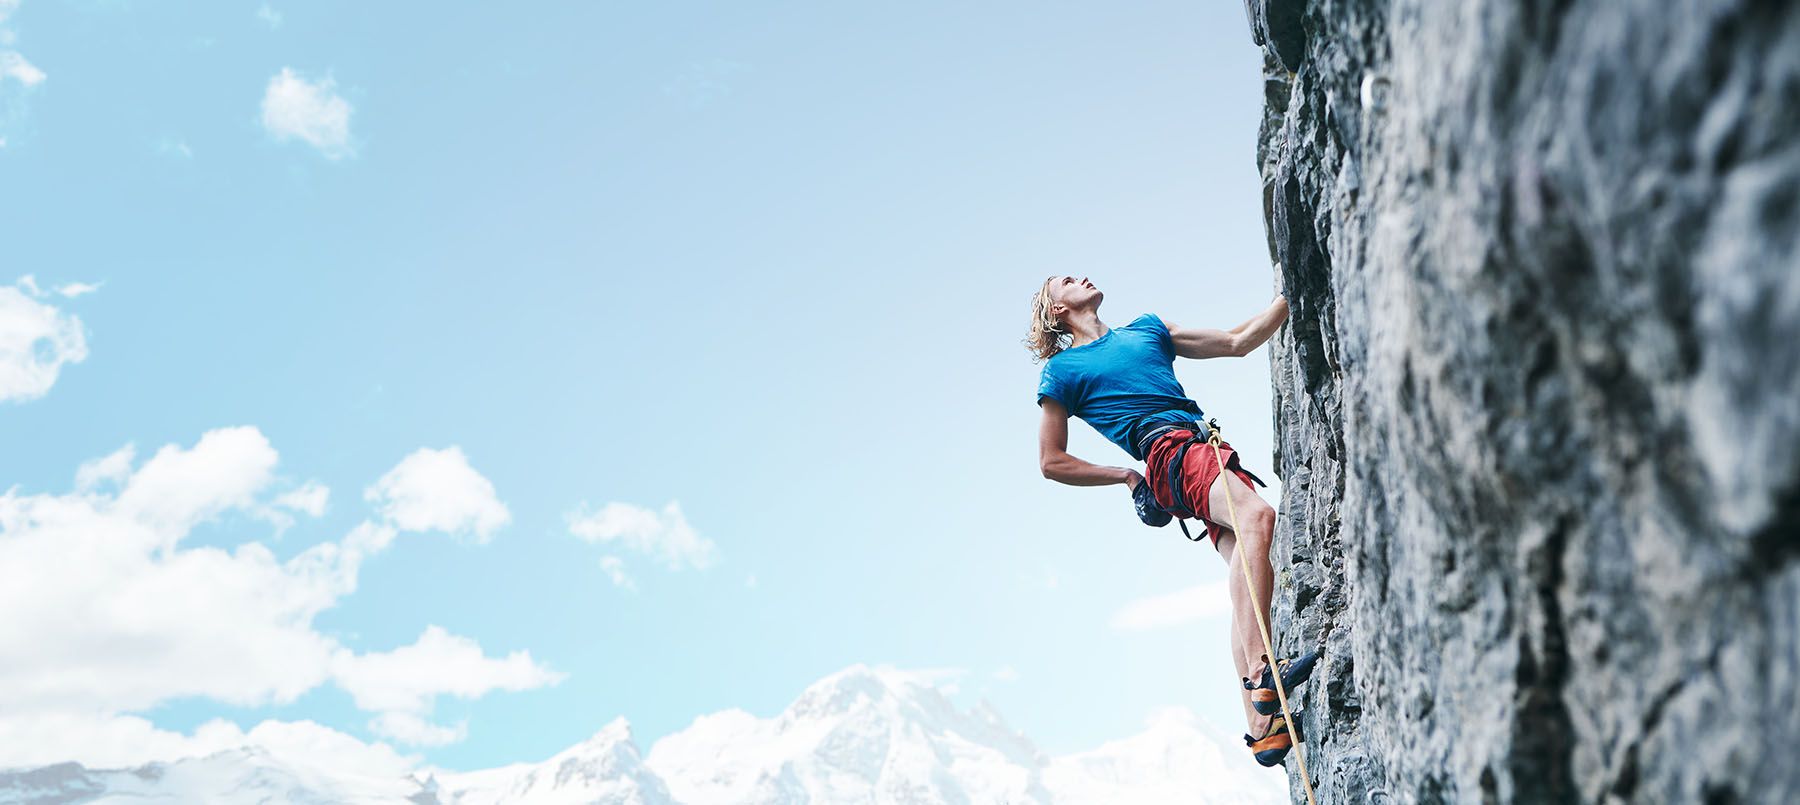 Climber on a mountainside wearing a blue t-shirt